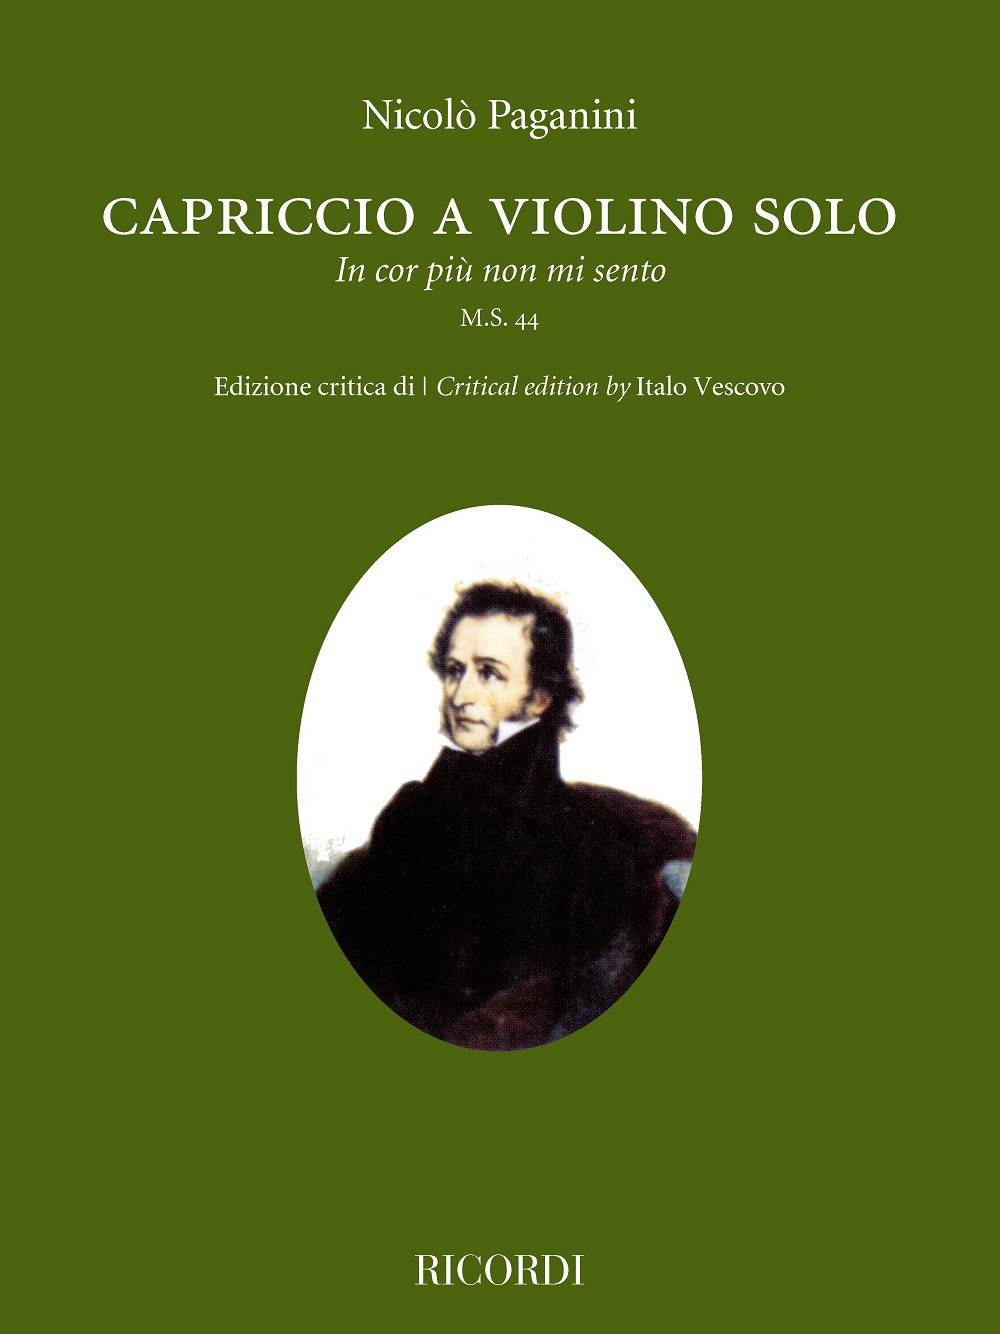 Niccol Paganini: Capriccio a violino solo 